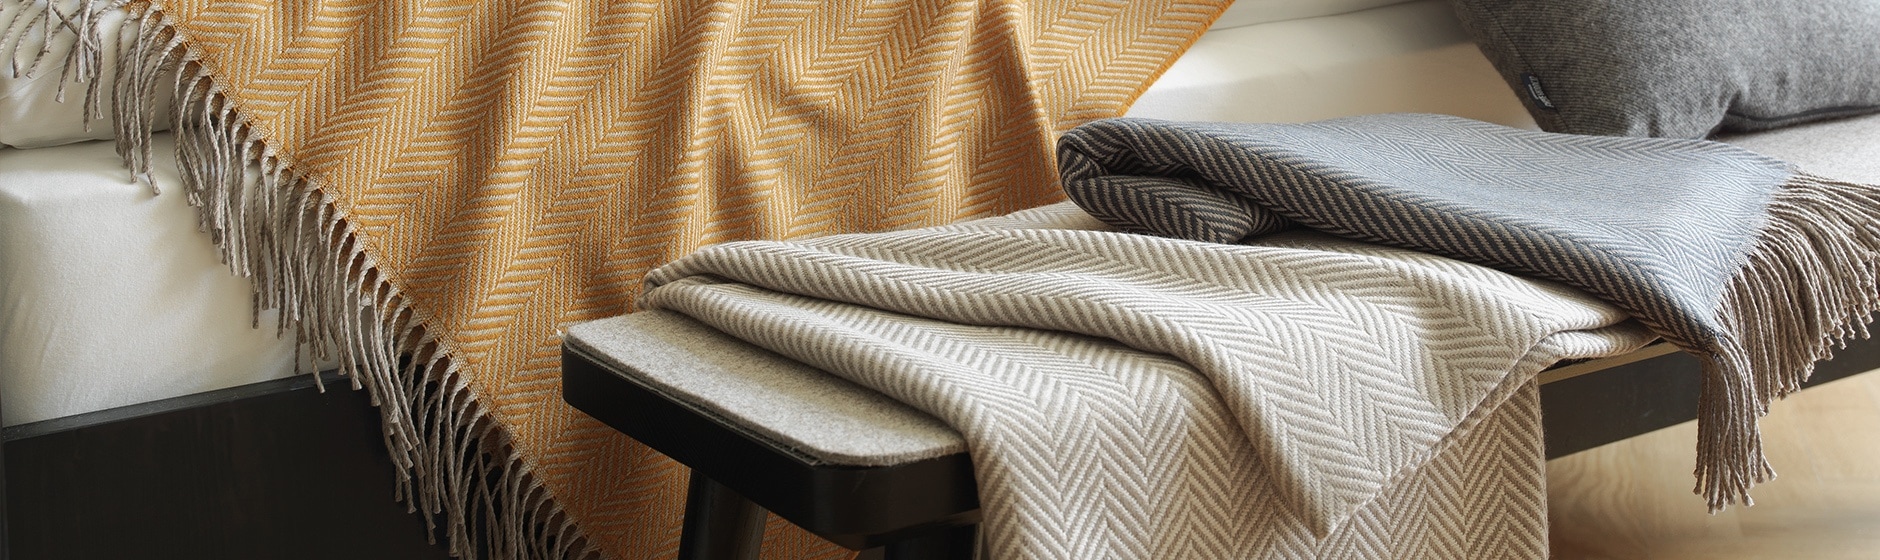 Decken, Wolldecken & Plaids im shop ikarus…design